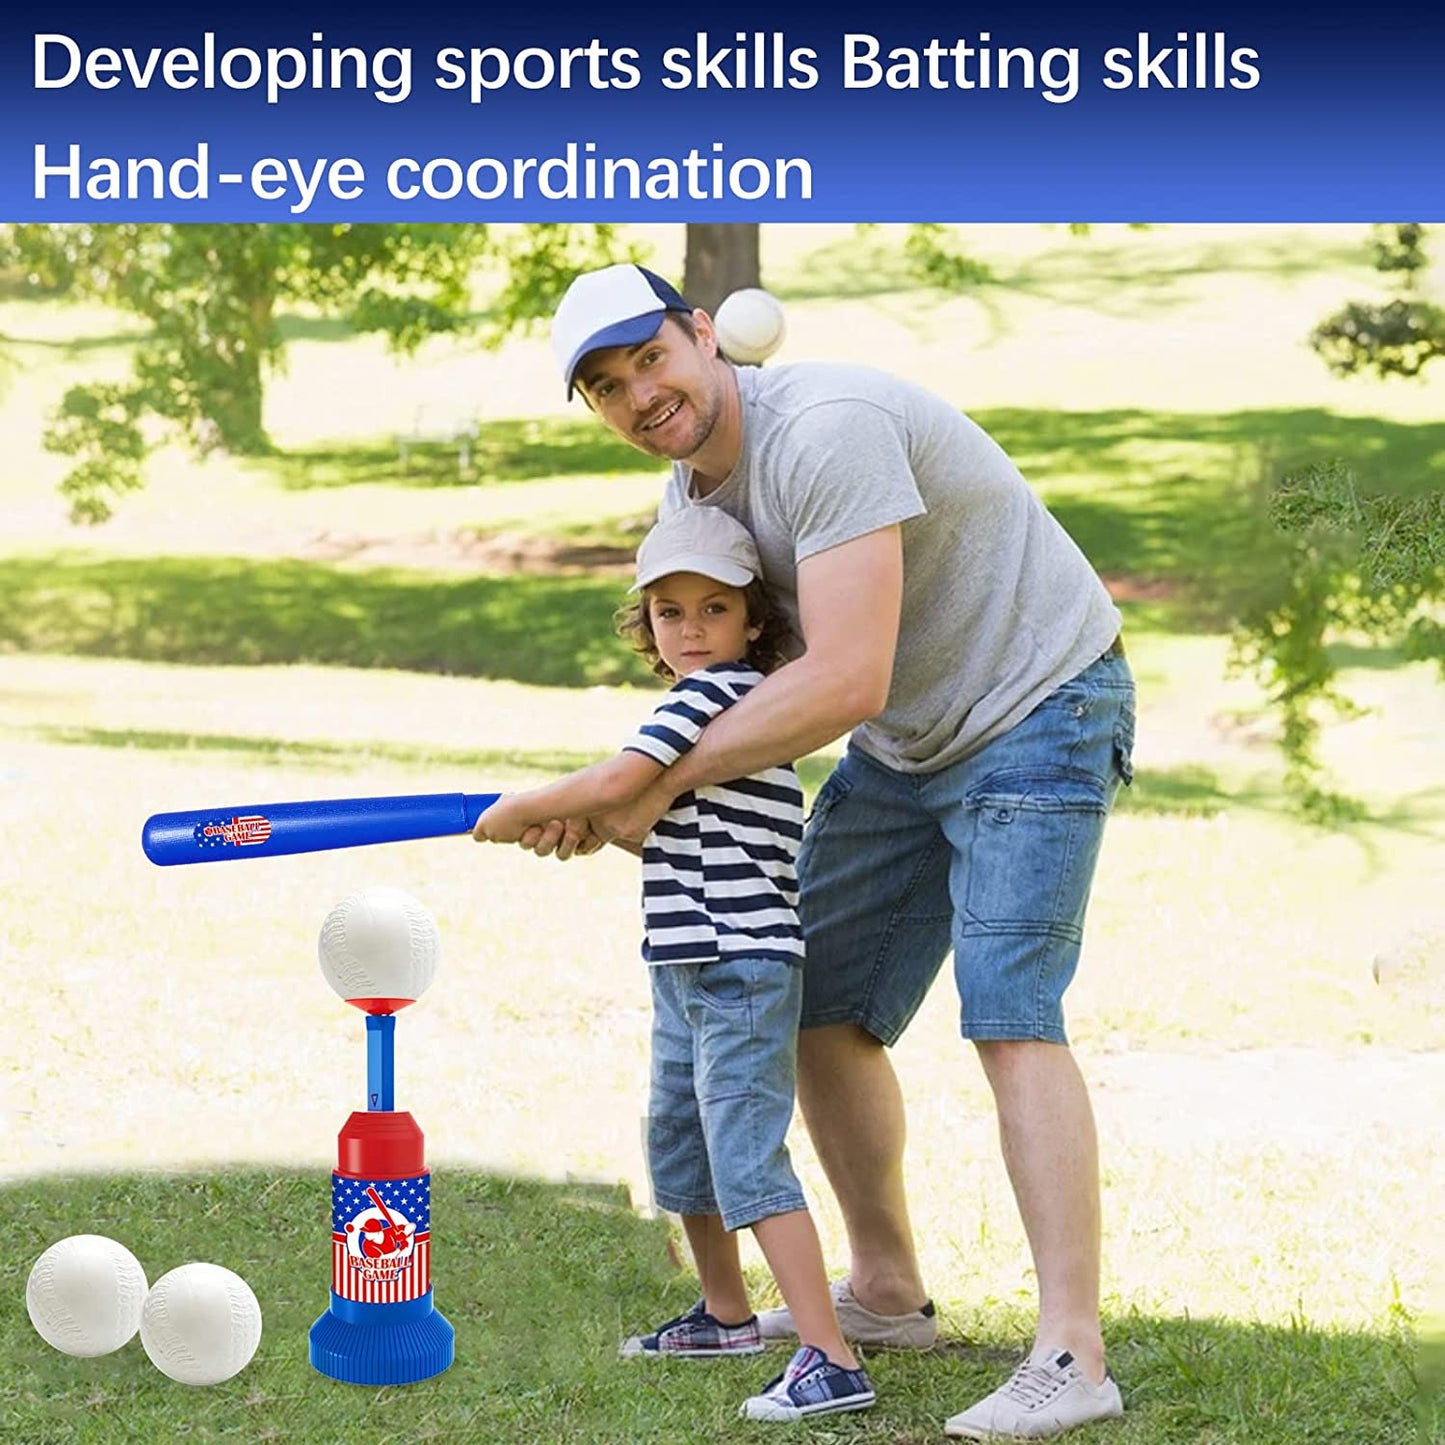 HAOMARK TBall Set | Baseball Bat | Toddler Baseball-Baseball 3 Balls- Kids Baseball Tee Game for Boys & Girls Ages 2- 10 Years